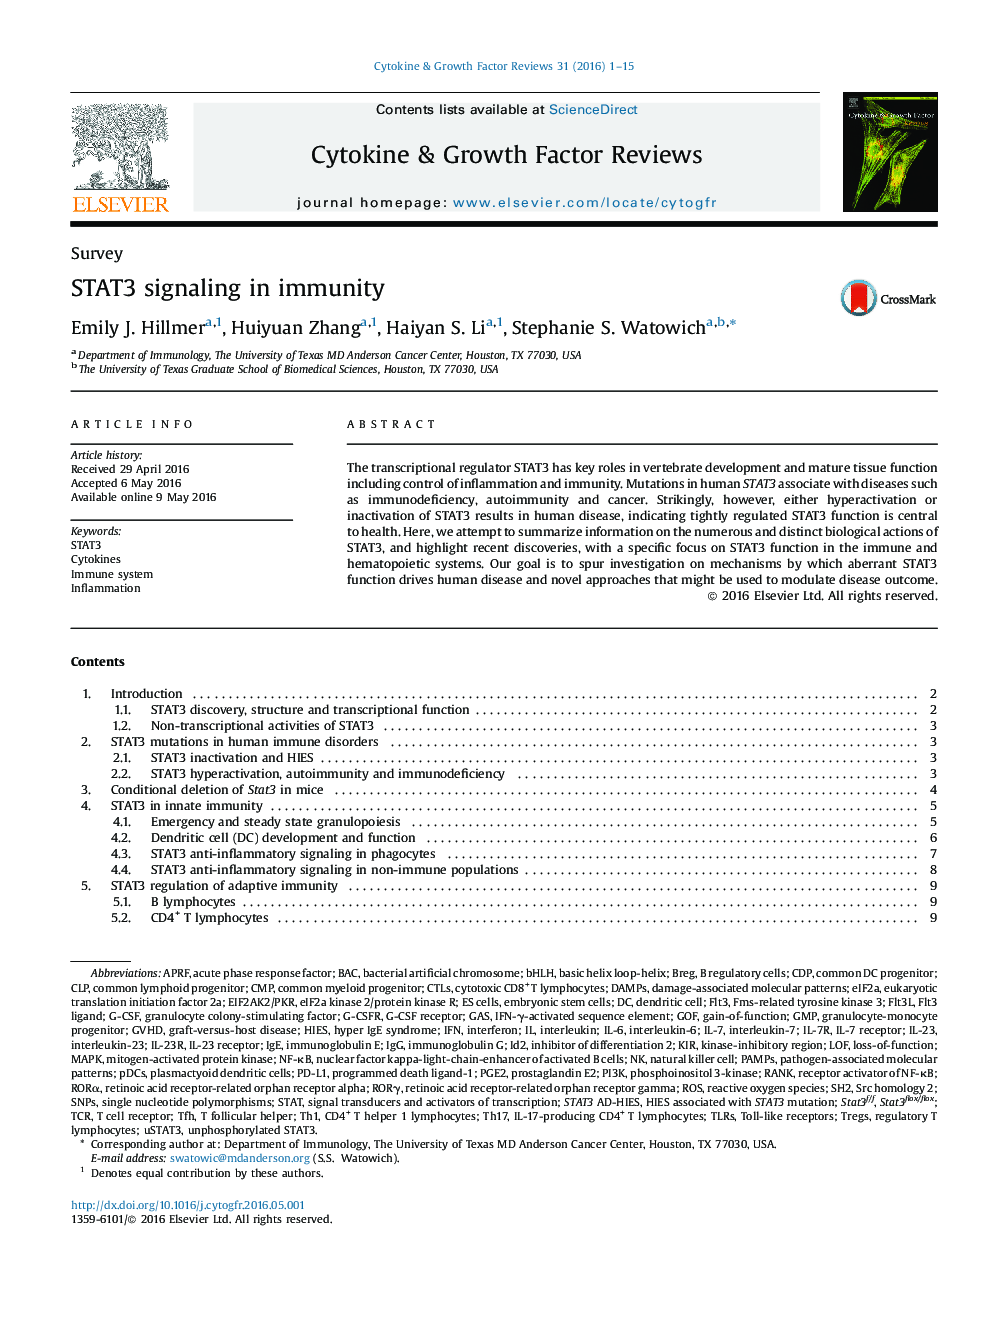 SurveySTAT3 signaling in immunity